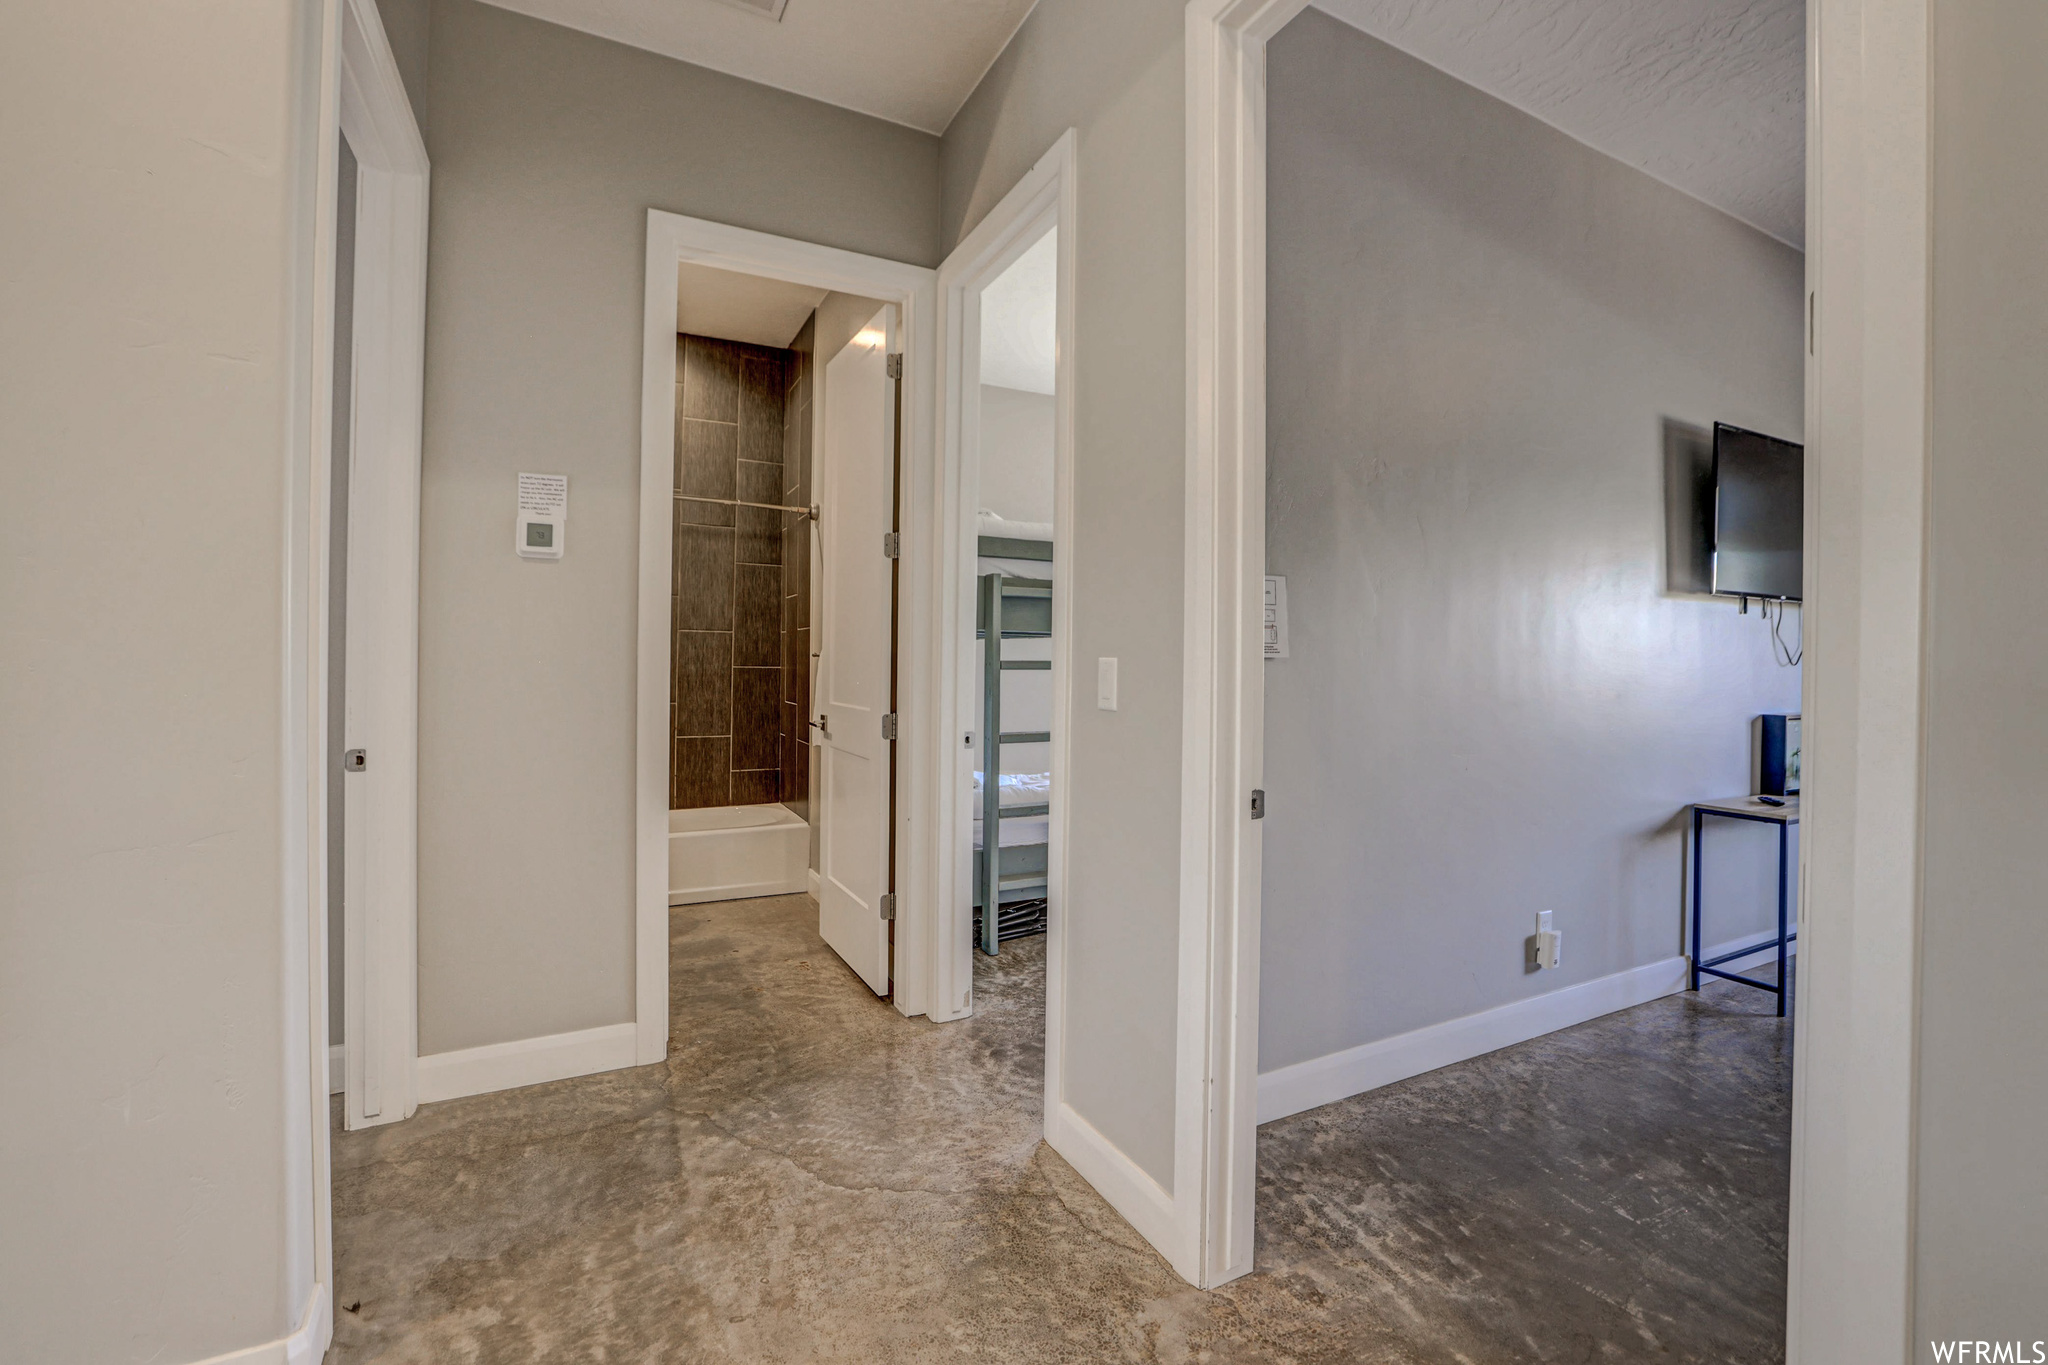 Corridor featuring tile flooring